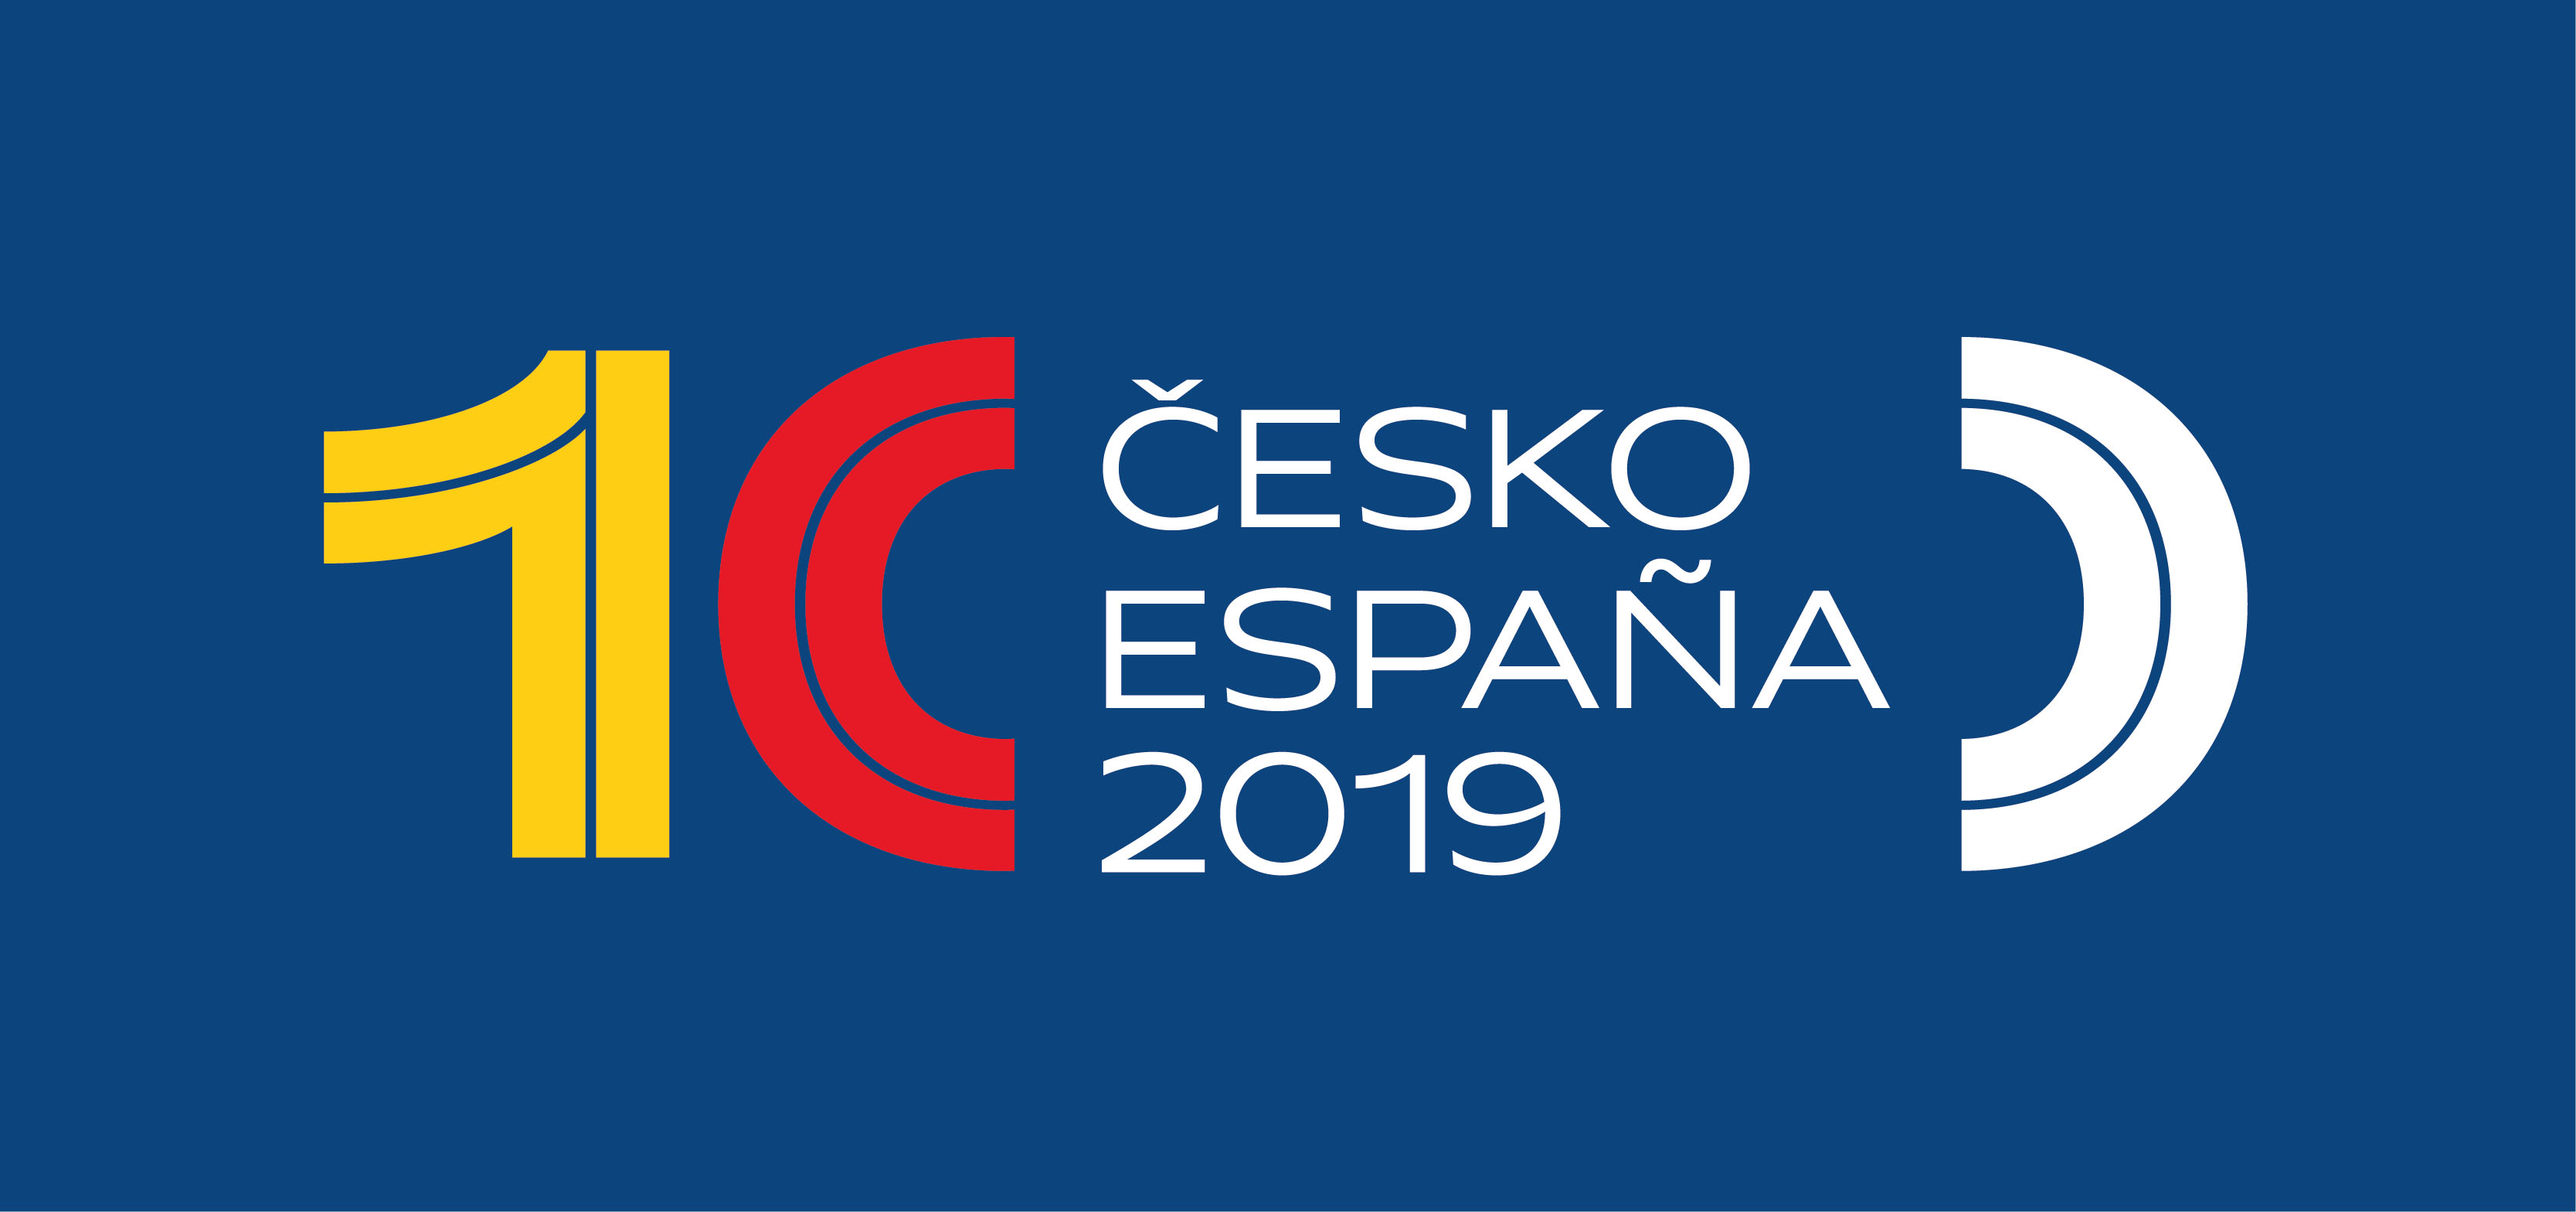 Centenario del establecimiento de relaciones diplomáticas entre la República Checa y el Reino de España